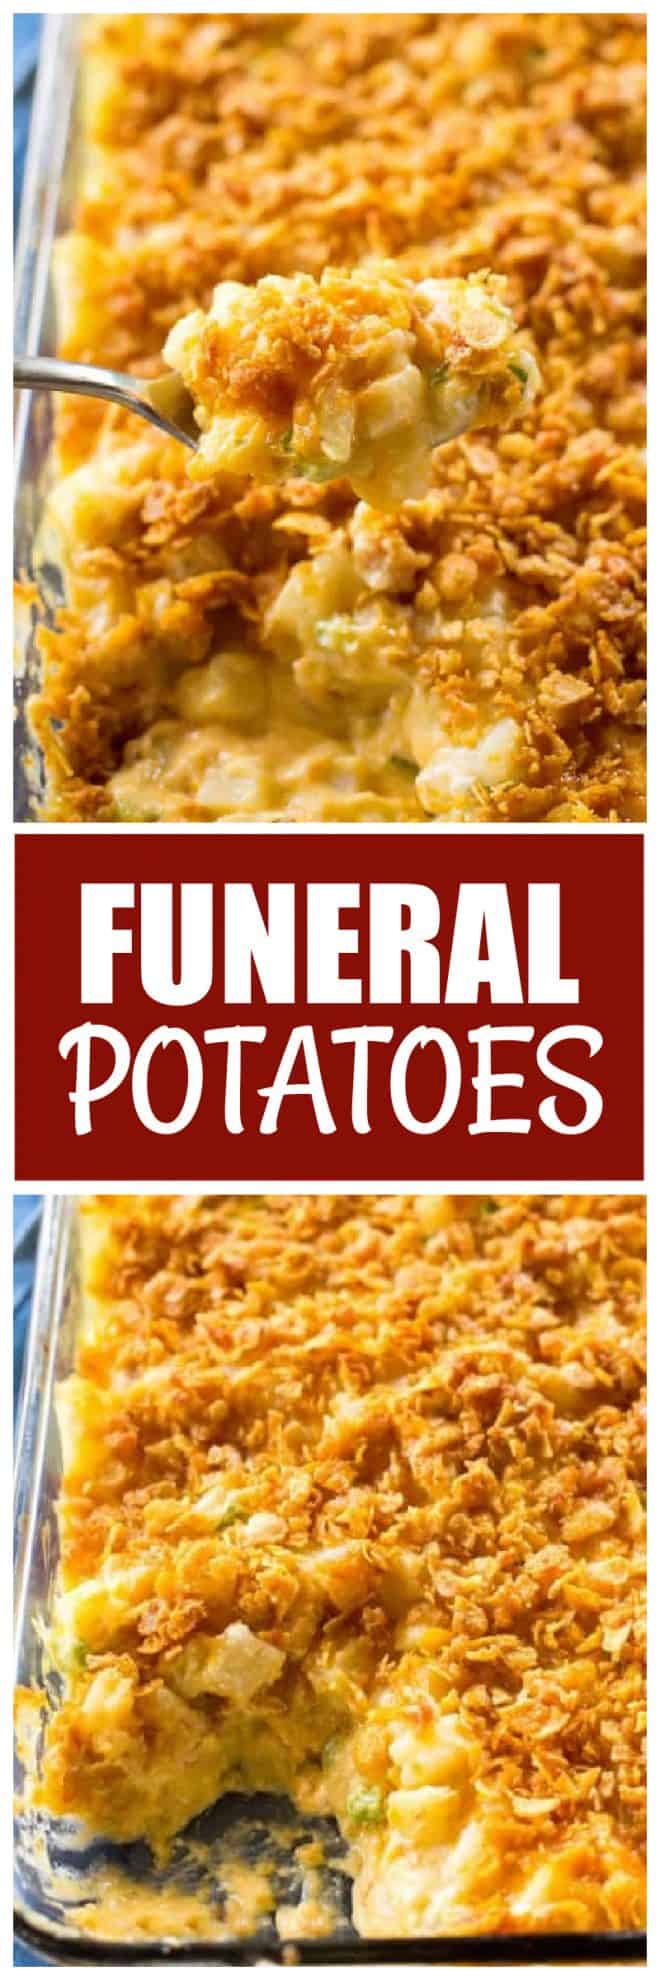 funeral-potatoes